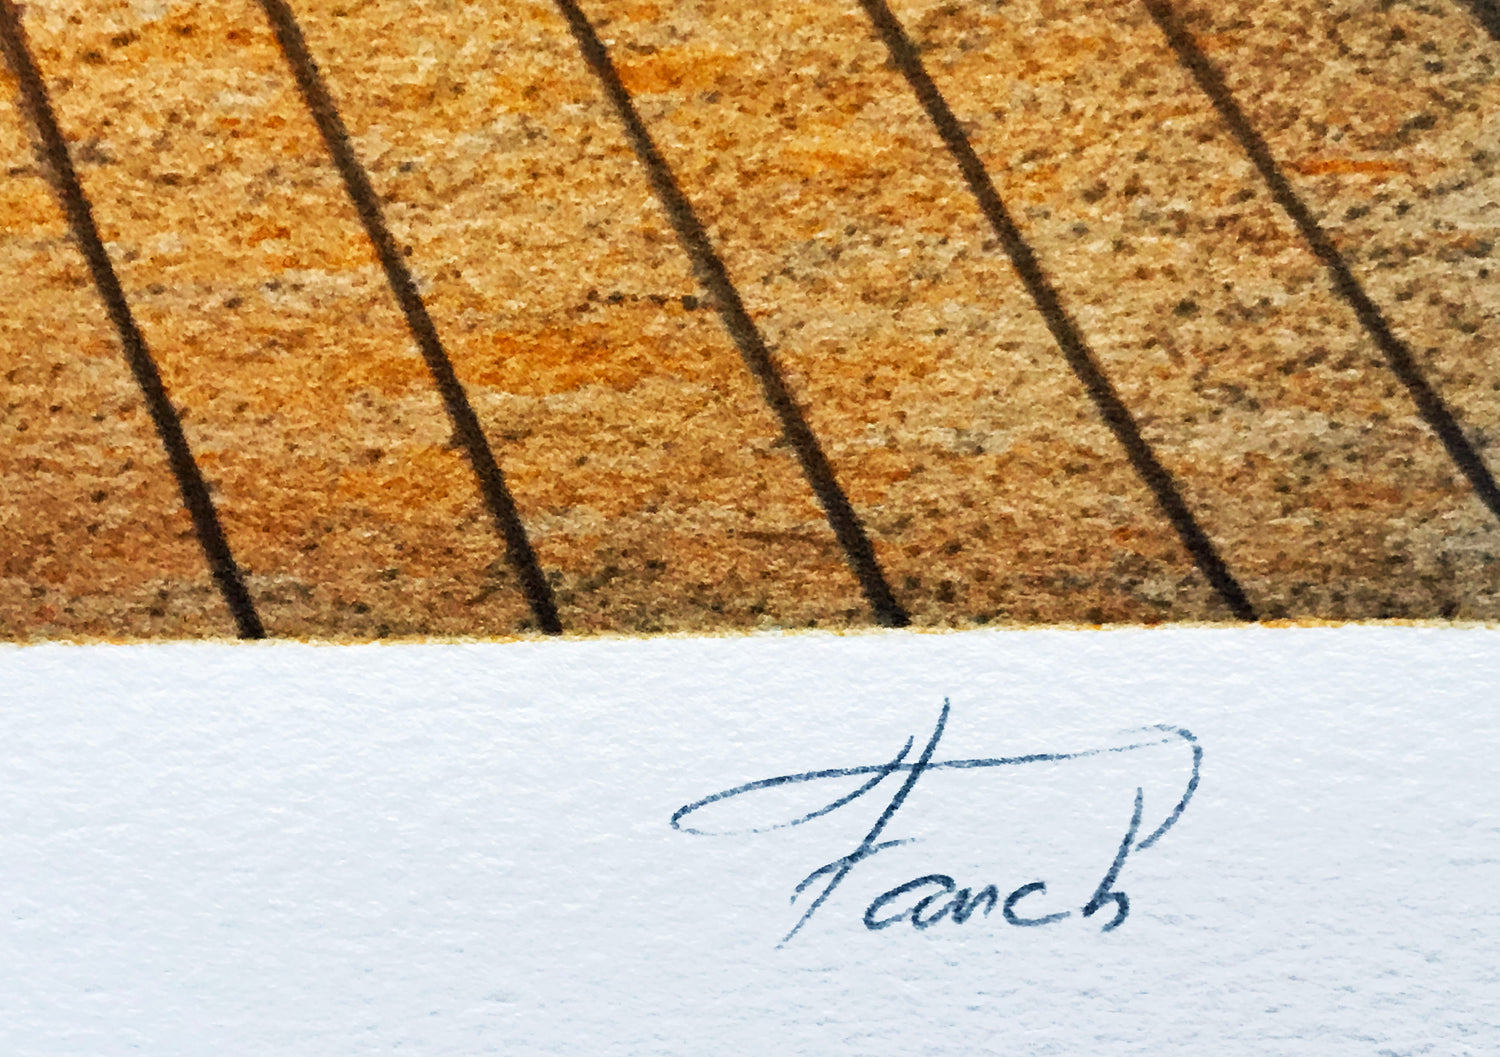 La Fenetre - Limited Hors Commerce (HC) Edition Lithograph on Paper by Fanch Ledan